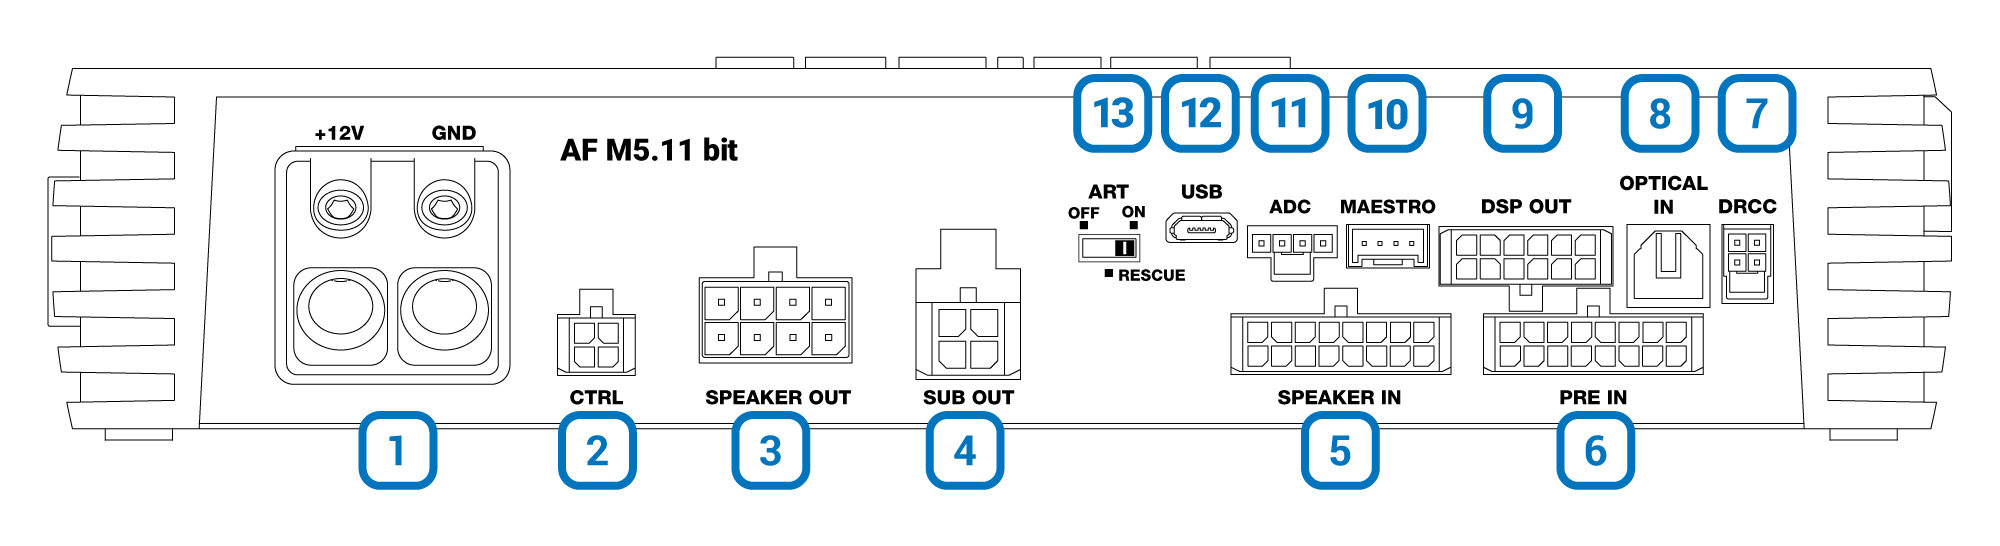 panel-description-connection_2.png